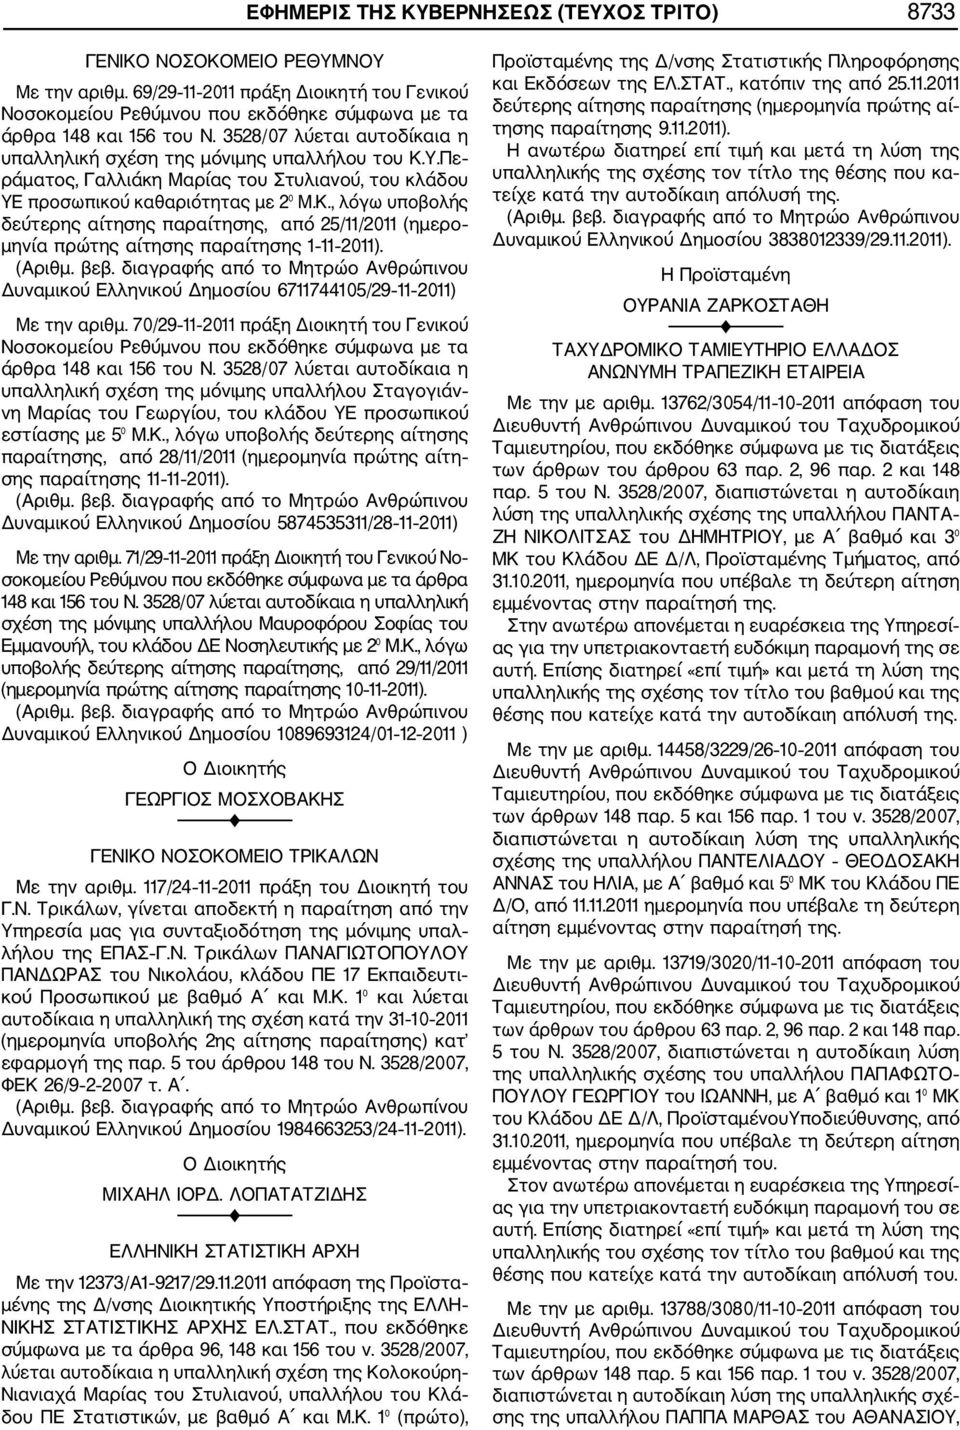 Δυναμικού Ελληνικού Δημοσίου 6711744105/29 11 2011) Με την αριθμ. 70/29 11 2011 πράξη Διοικητή του Γενικού Νοσοκομείου Ρεθύμνου που εκδόθηκε σύμφωνα με τα άρθρα 148 και 156 του Ν.